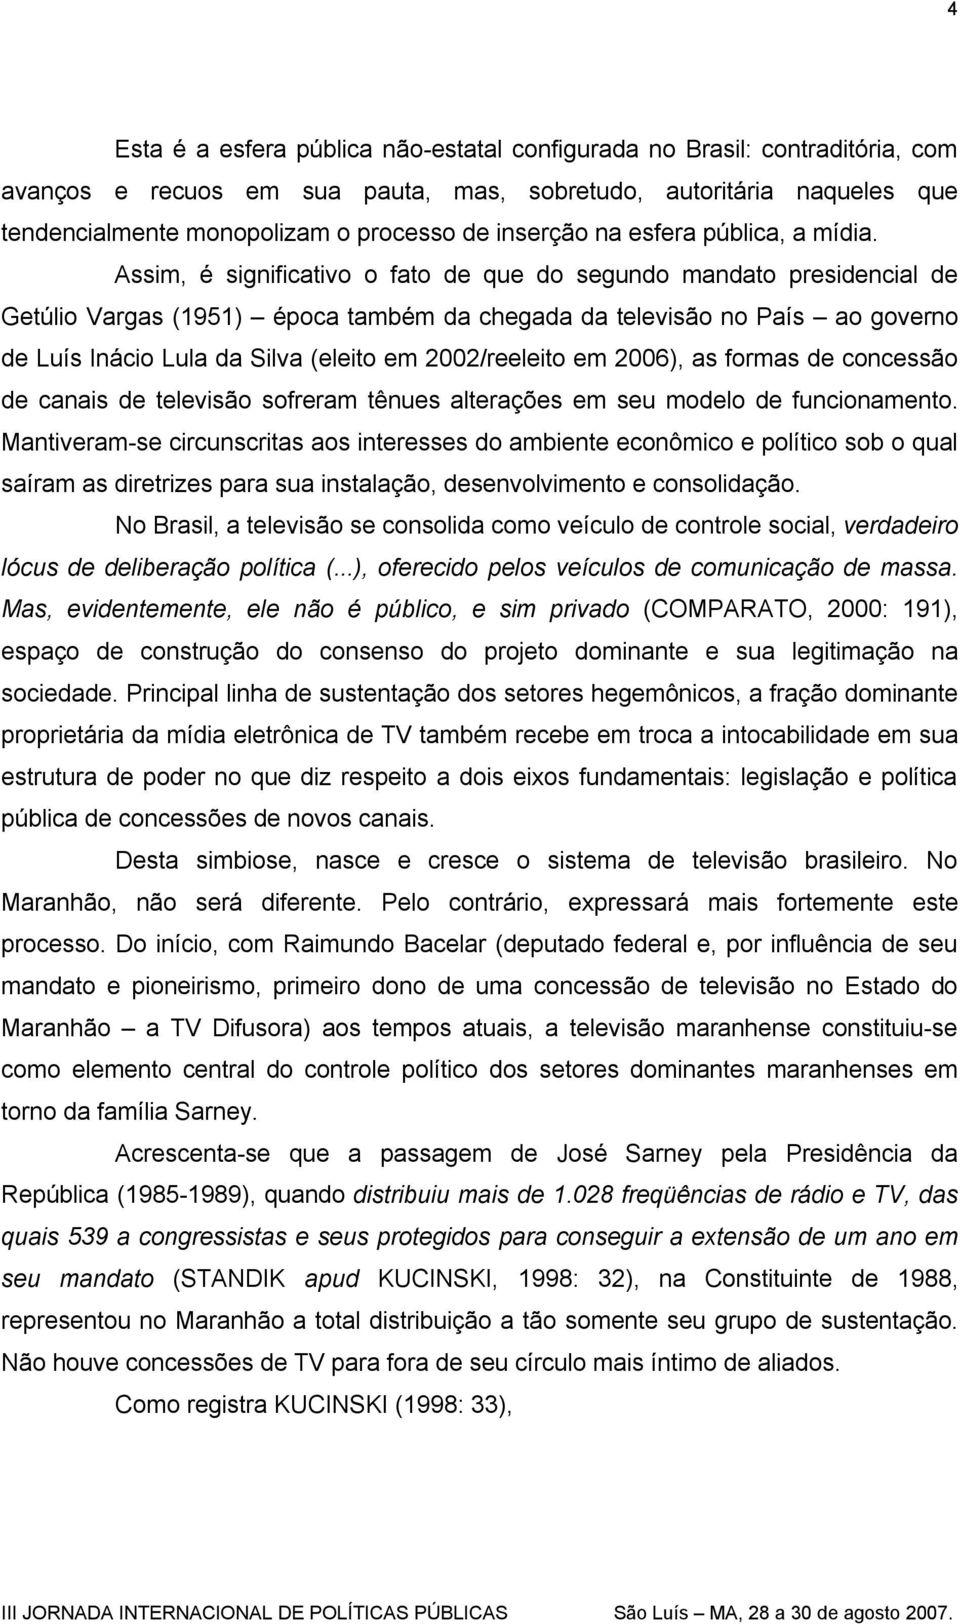 Assim, é significativo o fato de que do segundo mandato presidencial de Getúlio Vargas (1951) época também da chegada da televisão no País ao governo de Luís Inácio Lula da Silva (eleito em